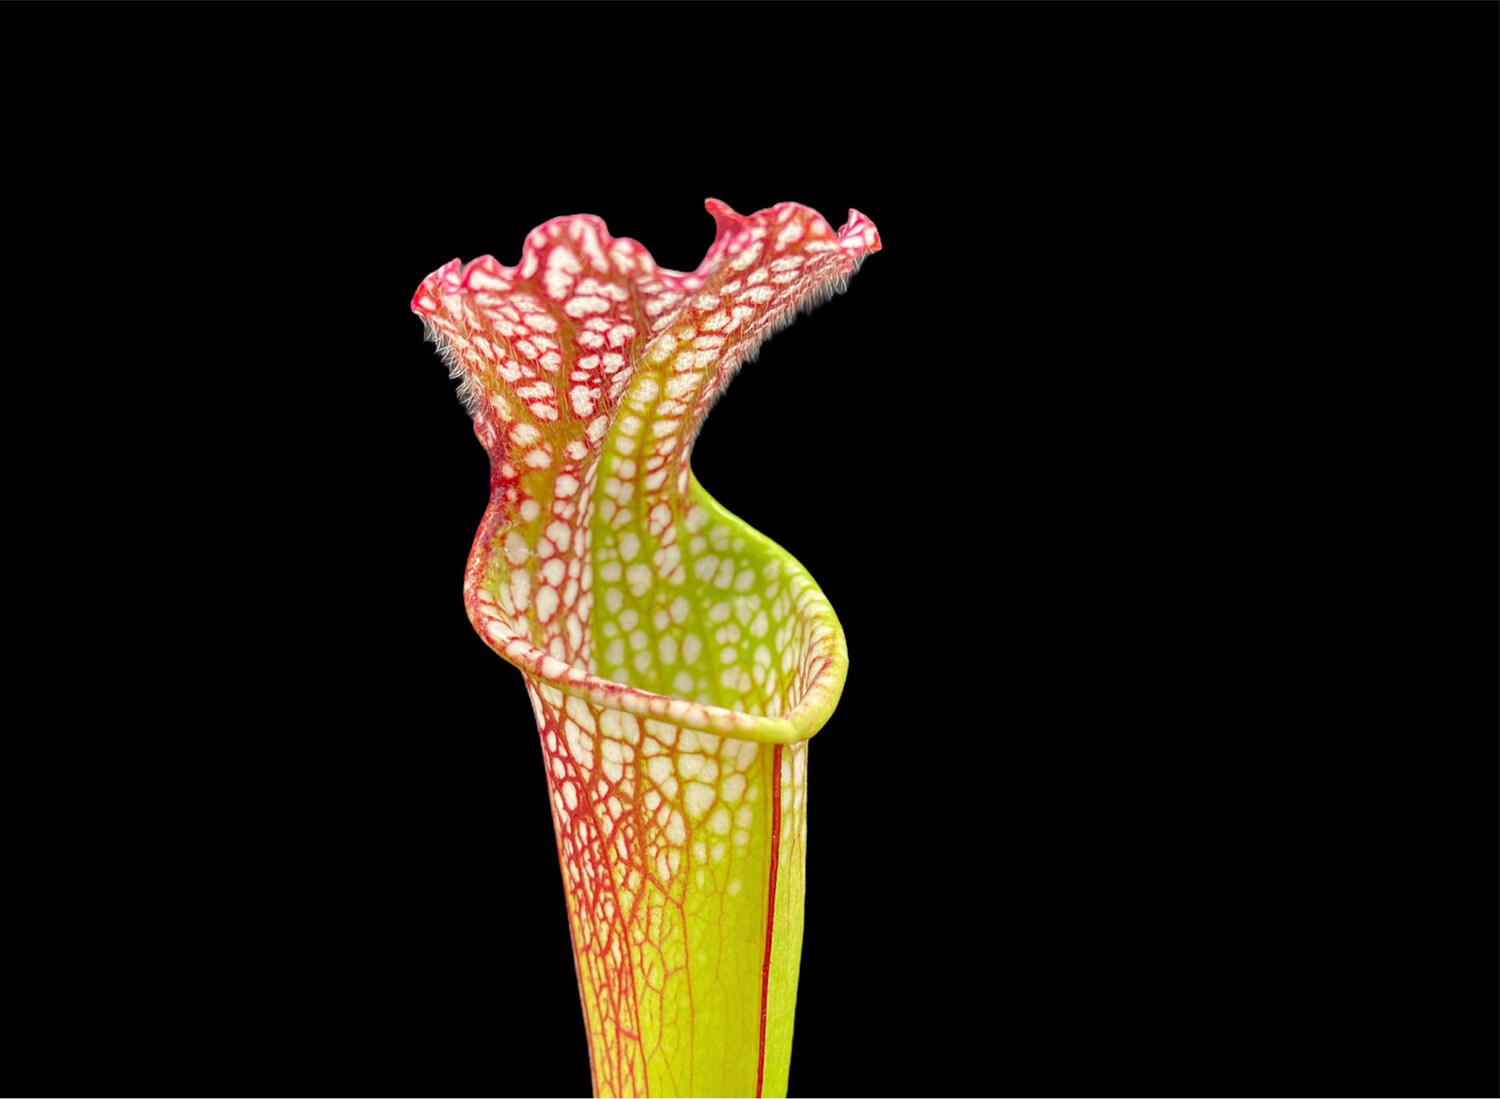 Sarracenia leucophylla “Big mouth” - Nice Plants! 